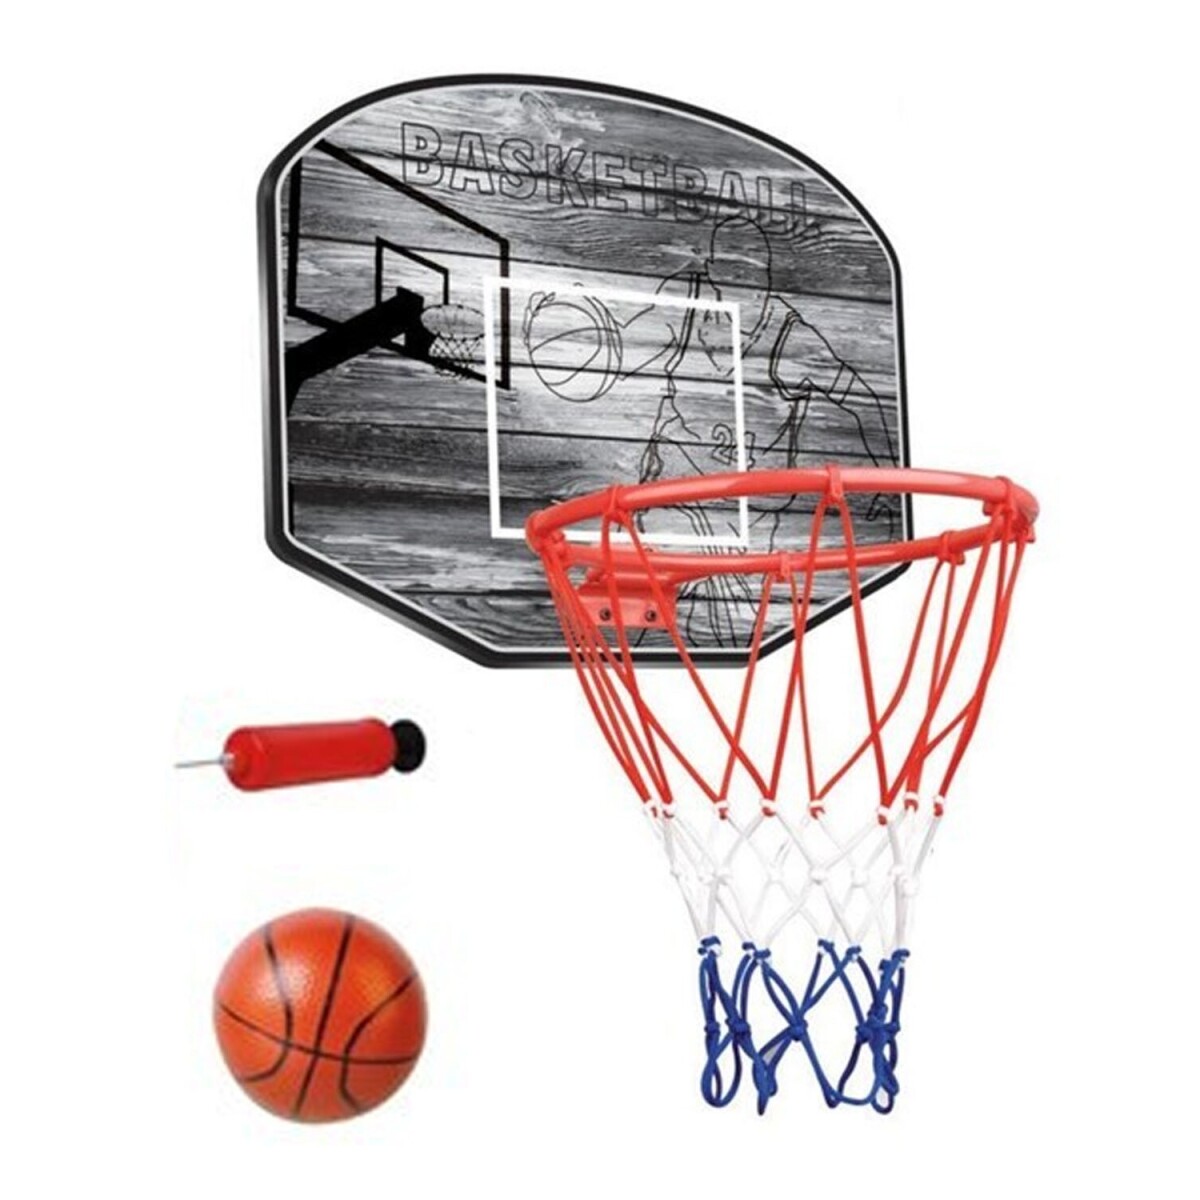 Tablero de Basket + pelota e inflador 